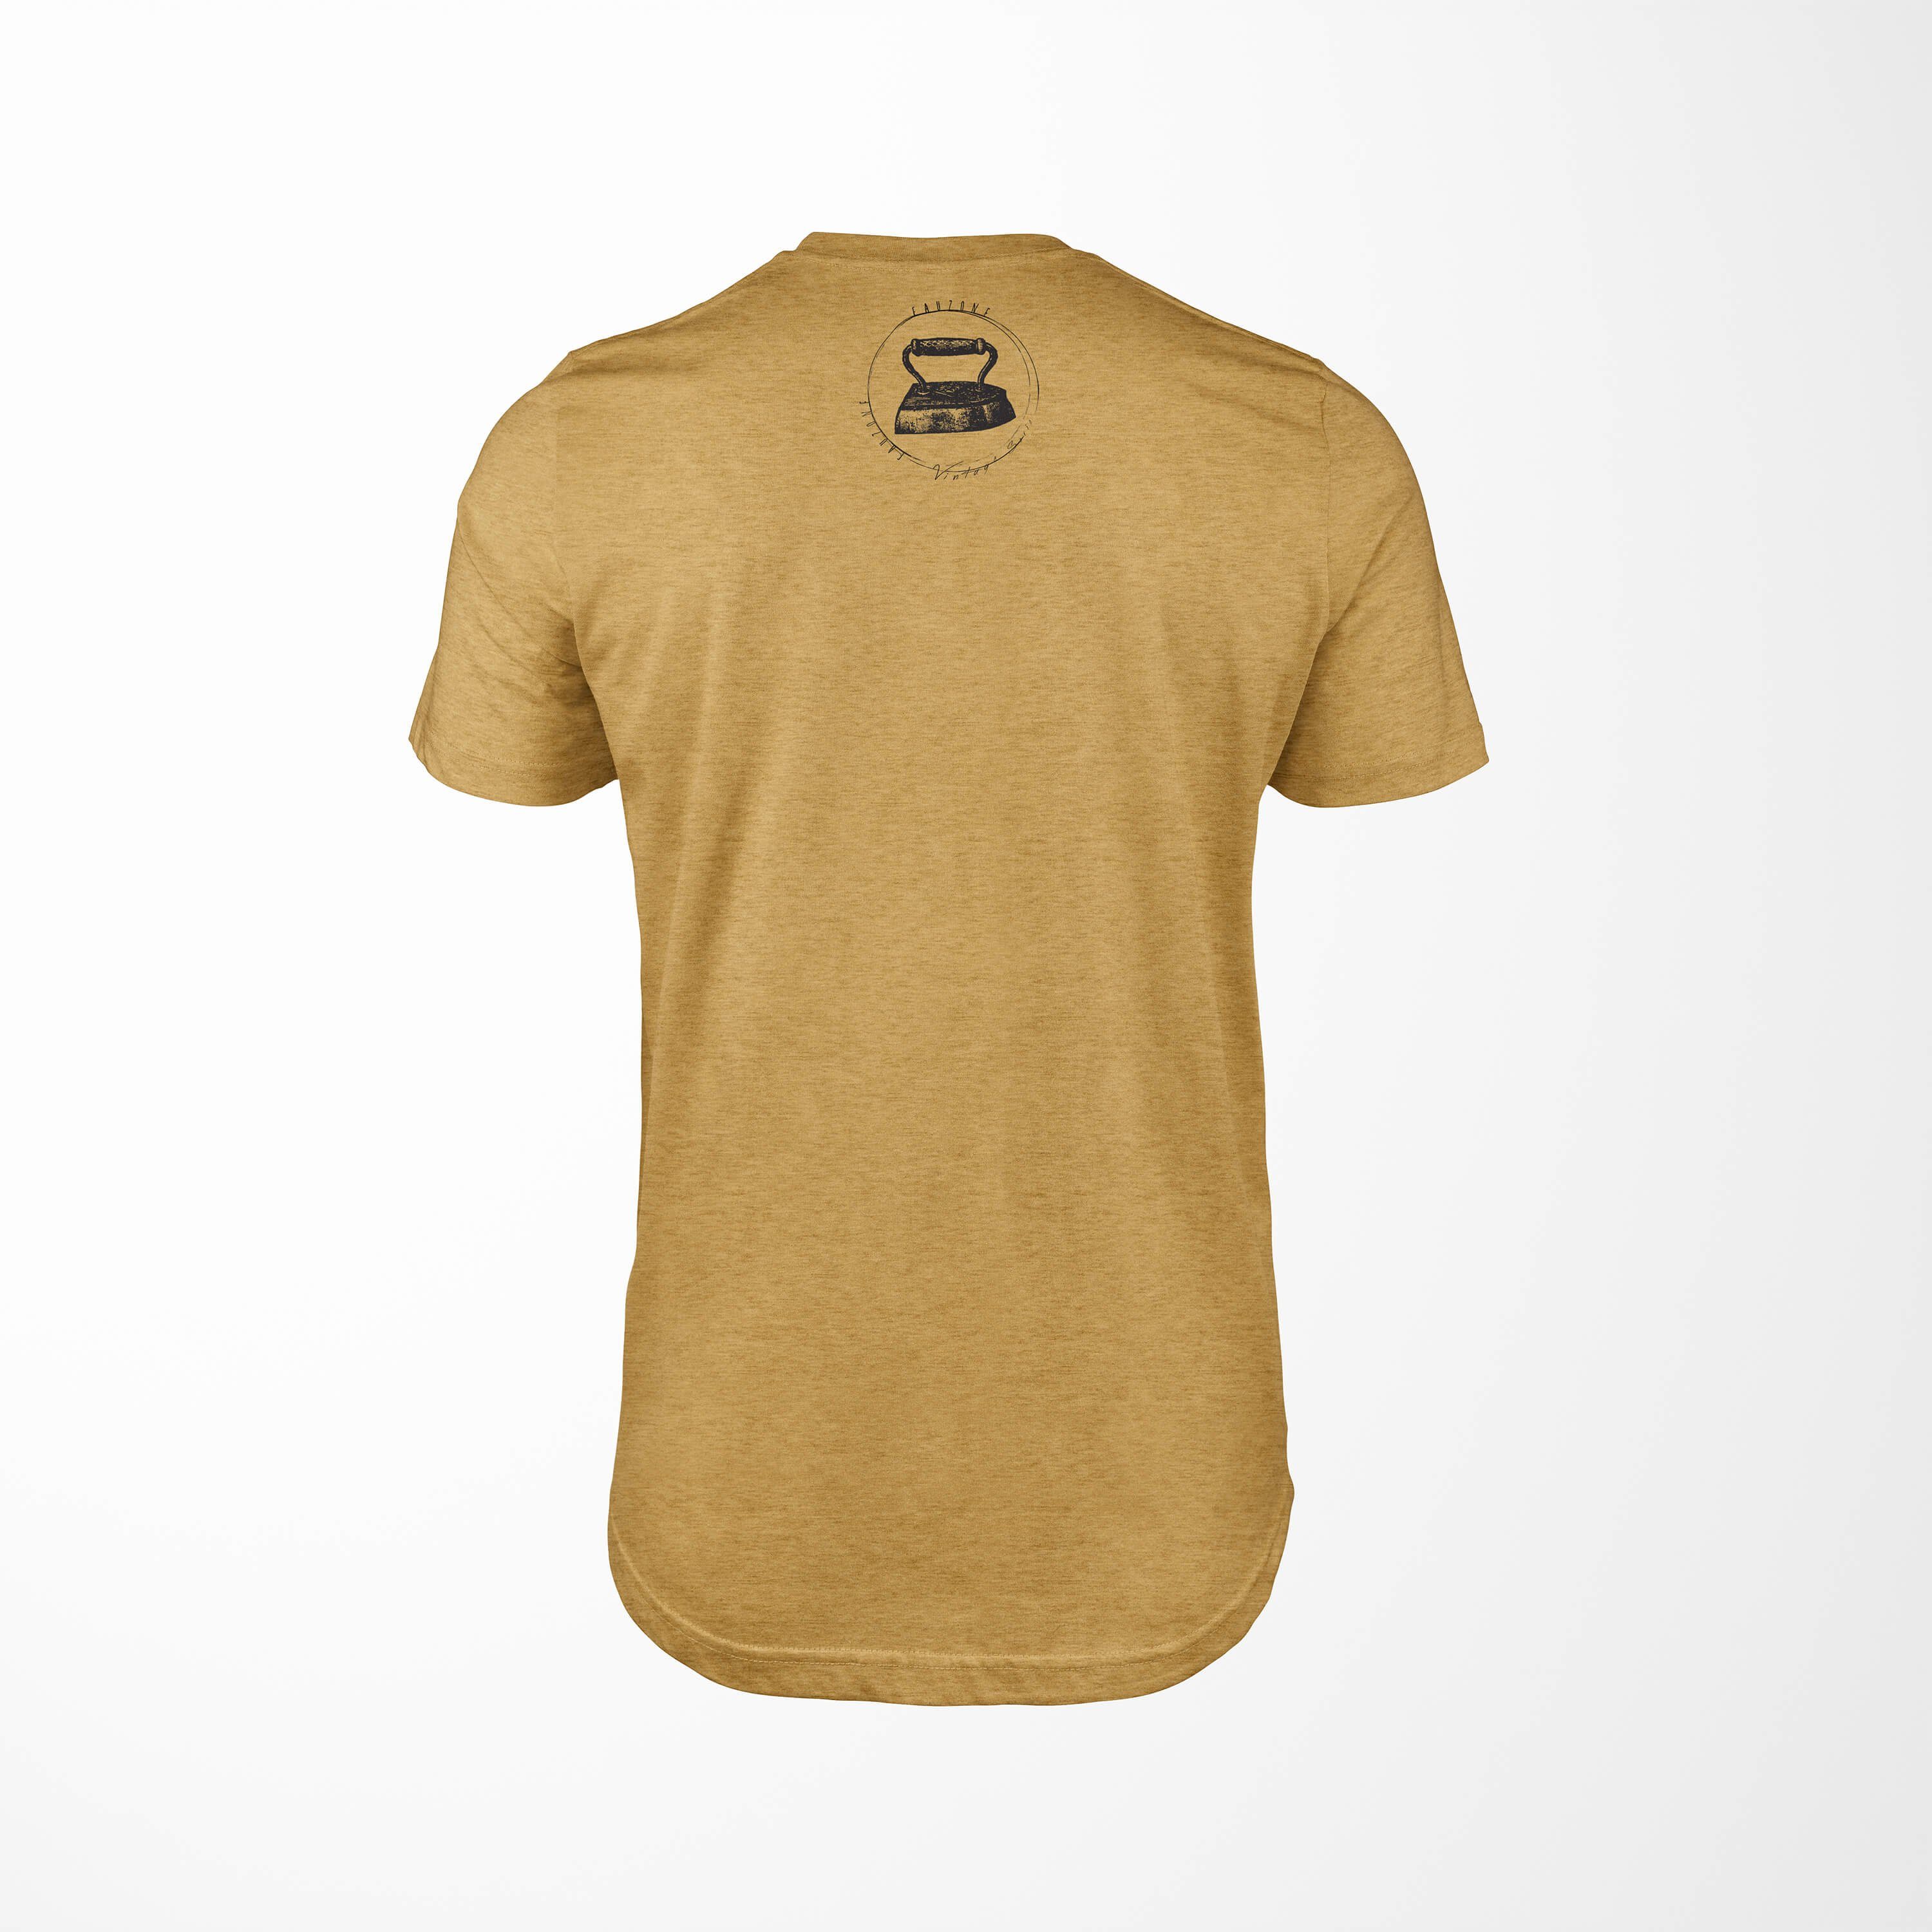 Vintage T-Shirt Sinus T-Shirt Art Gold Herren Bügeleisen Antique